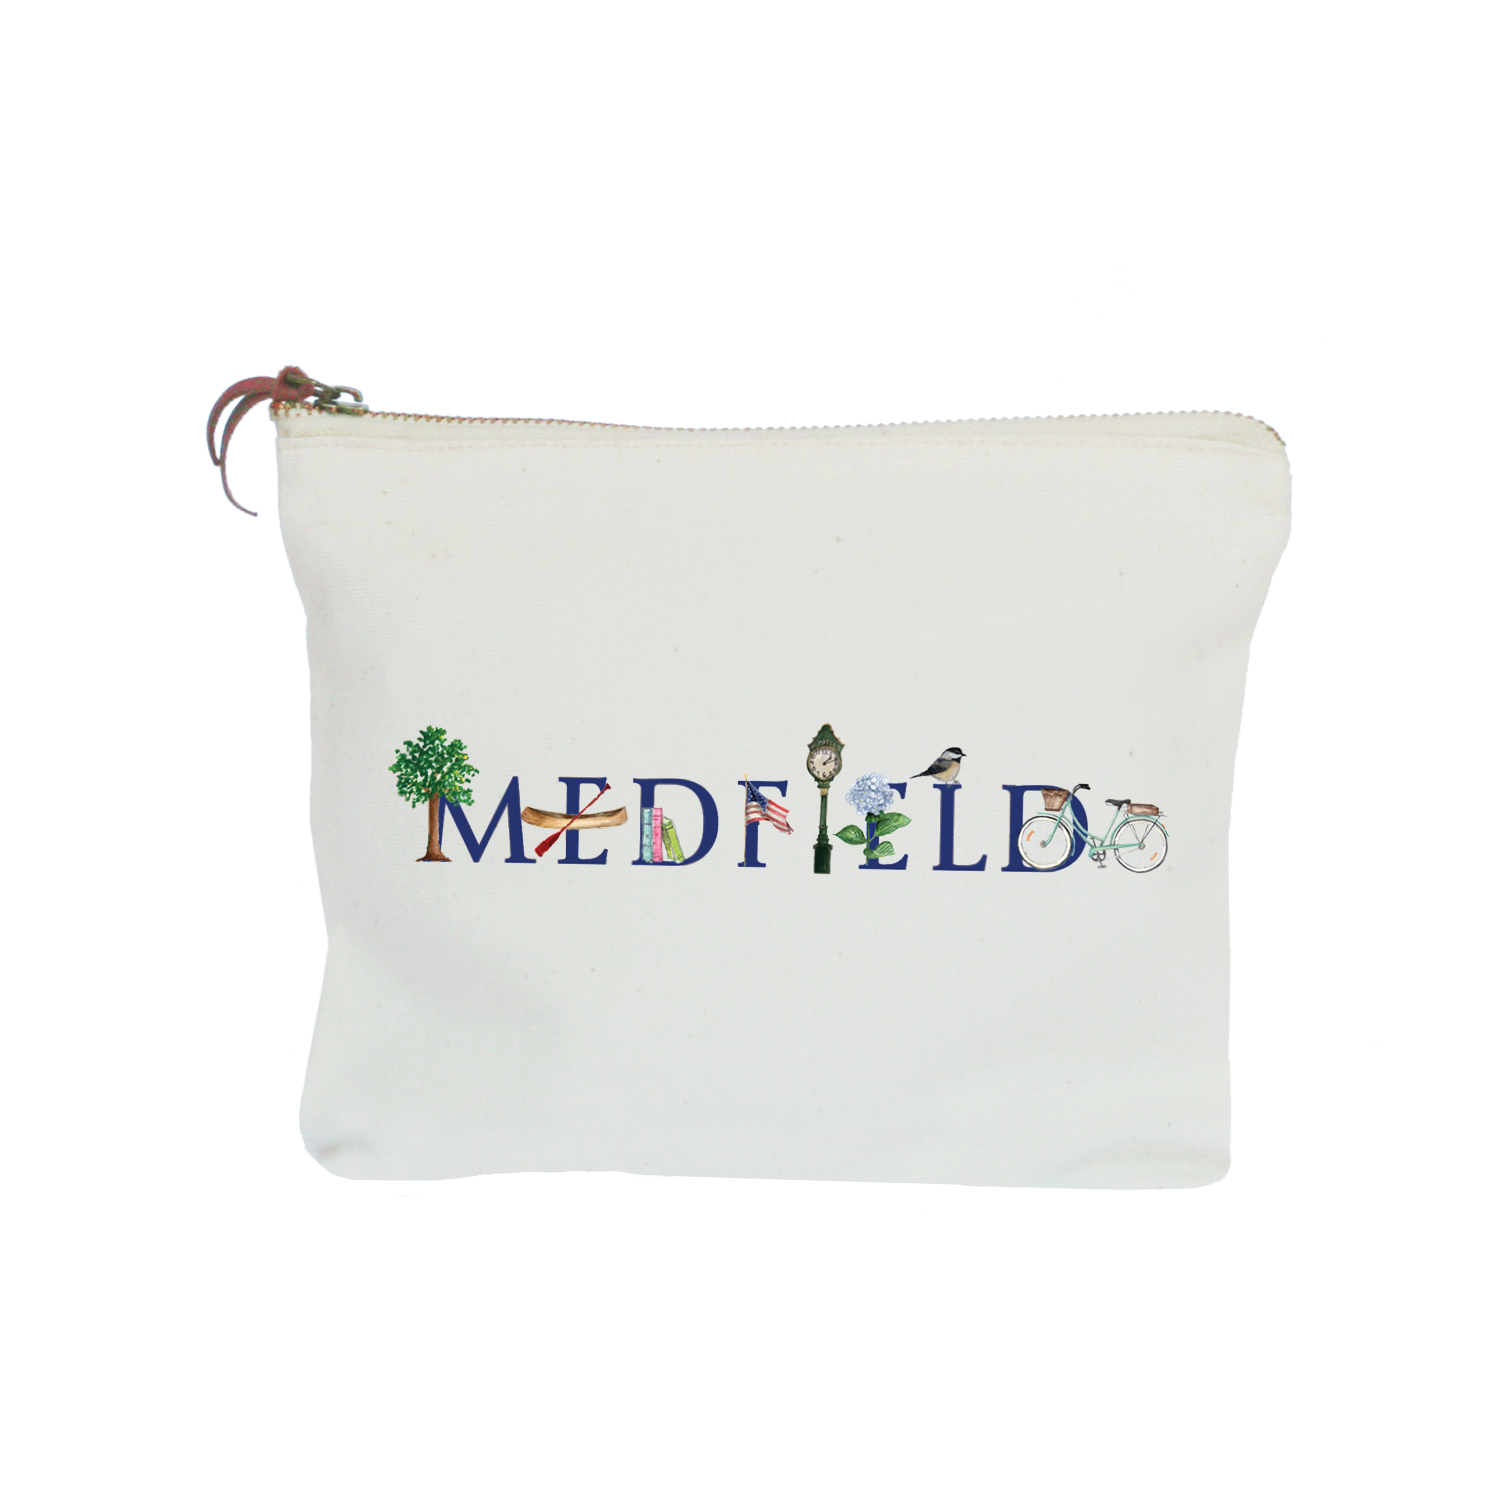 medfield zipper pouch